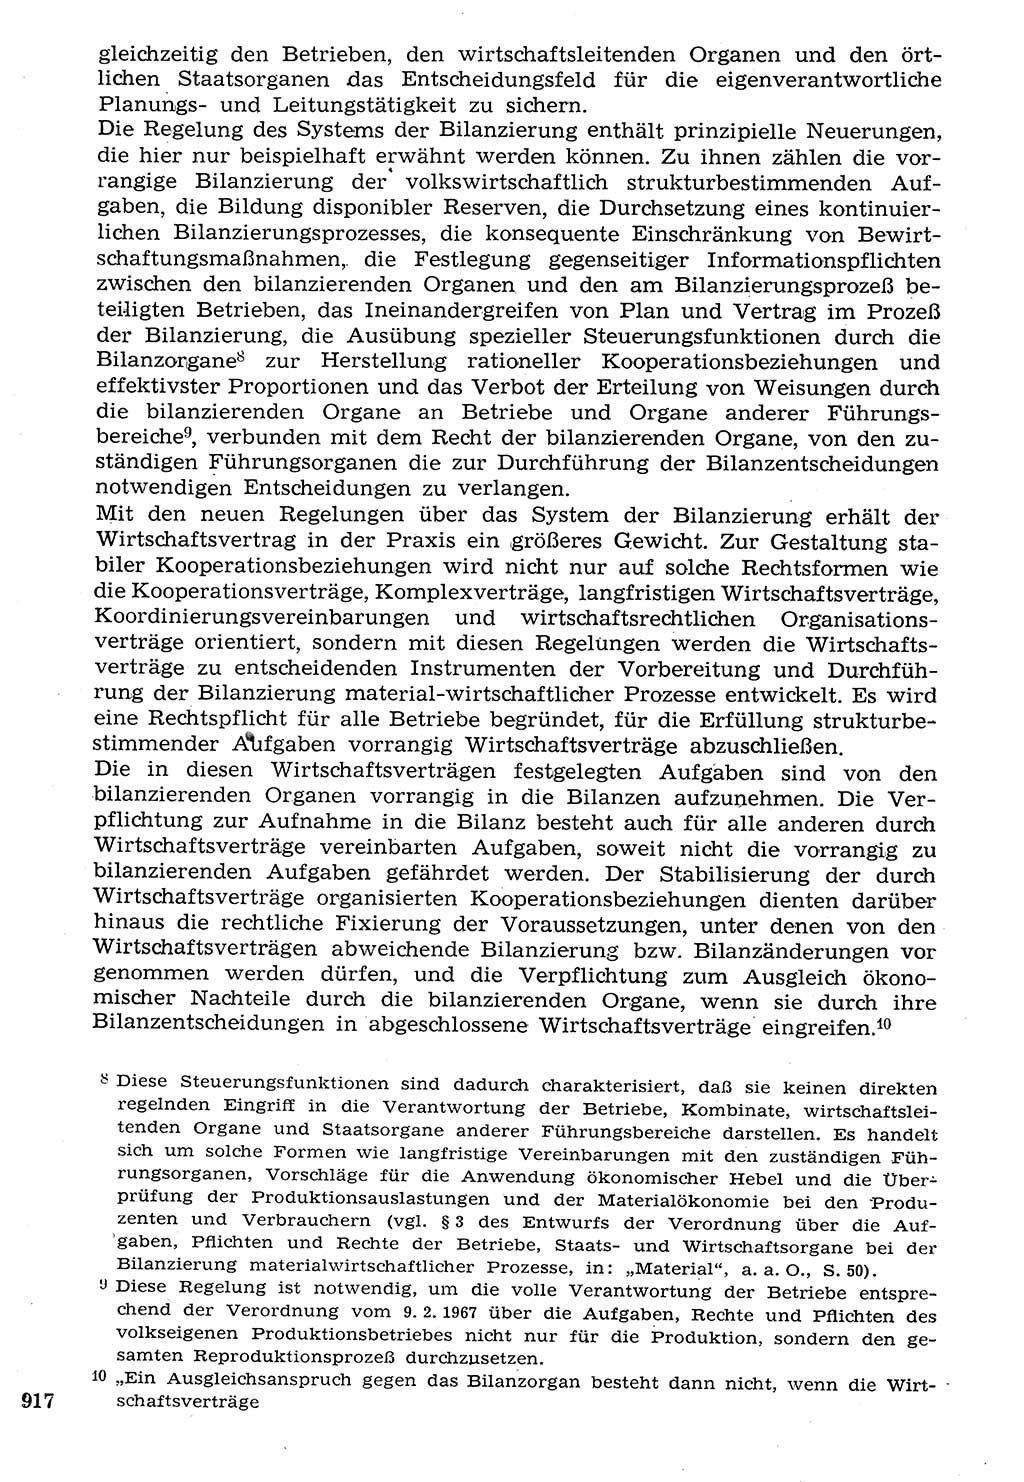 Staat und Recht (StuR), 17. Jahrgang [Deutsche Demokratische Republik (DDR)] 1968, Seite 917 (StuR DDR 1968, S. 917)